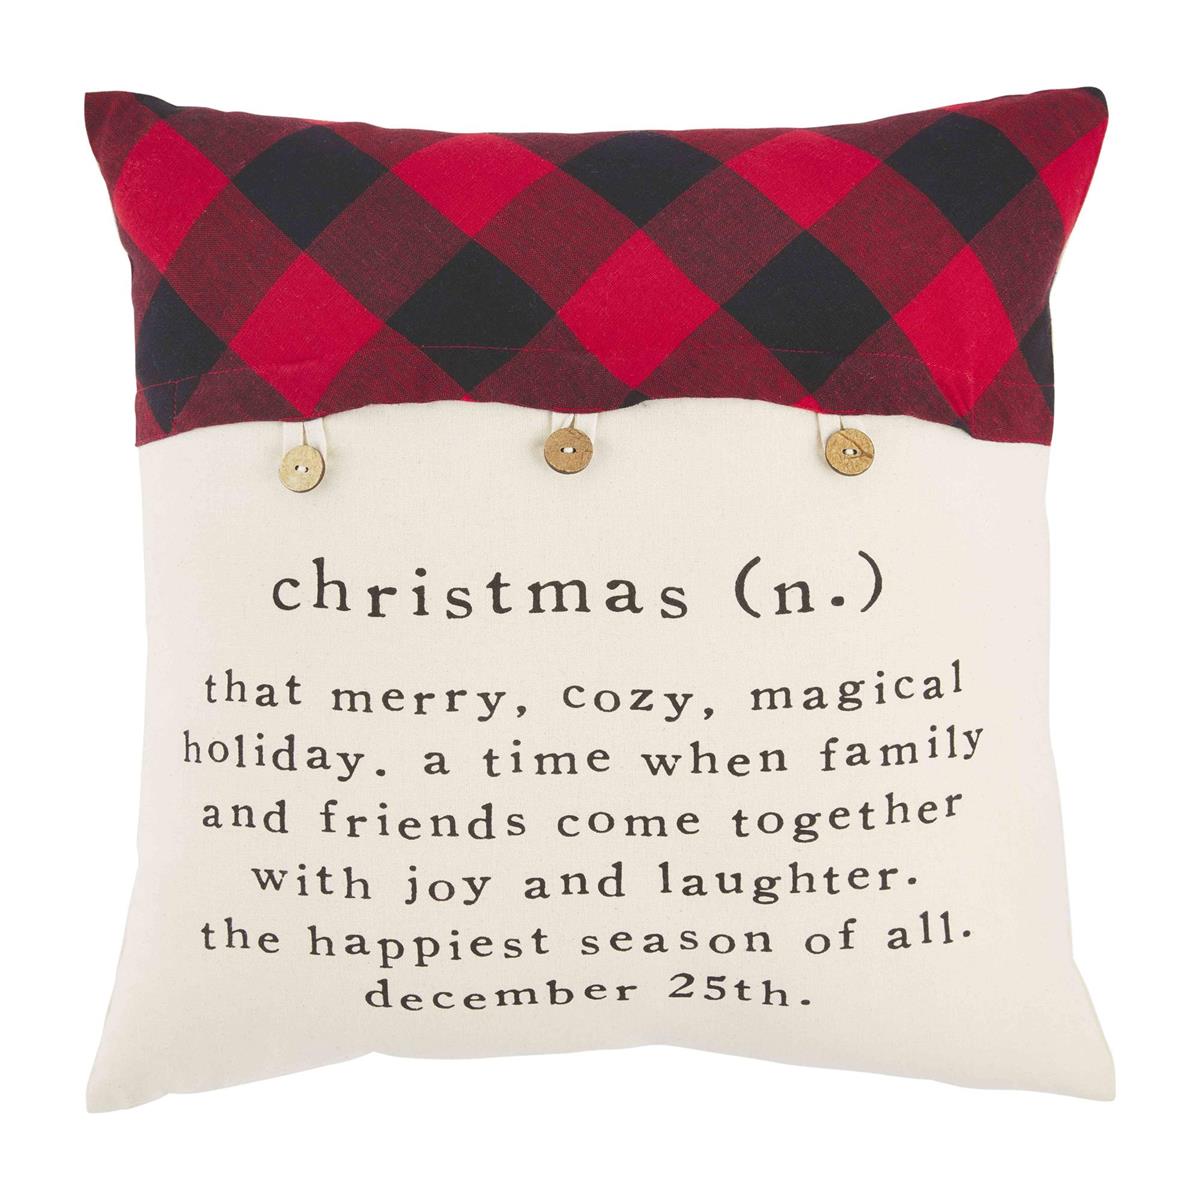 Christmas Check Button Pillows